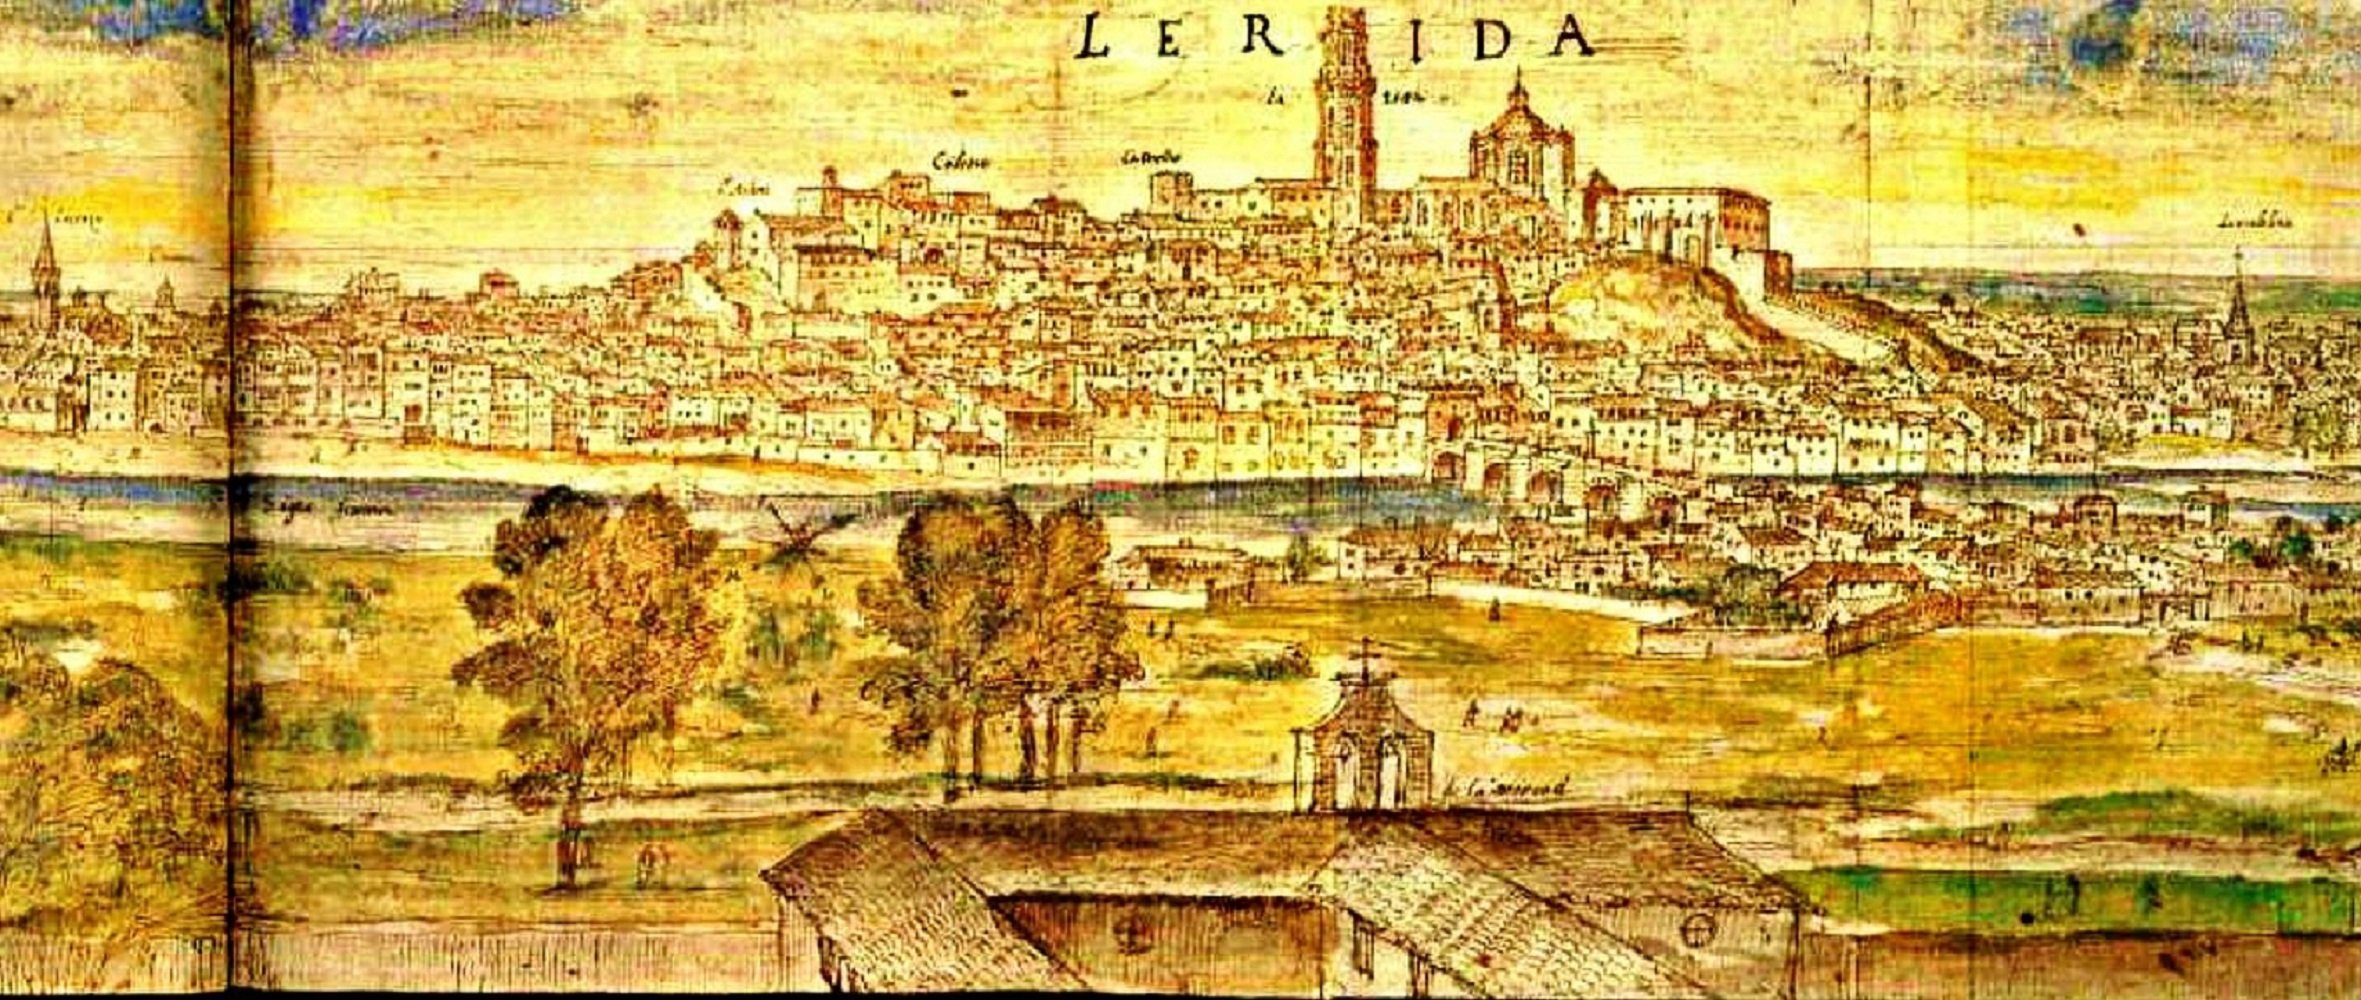 Se funda el Estudio General de Lleida, la primera universidad de la Corona de Aragón